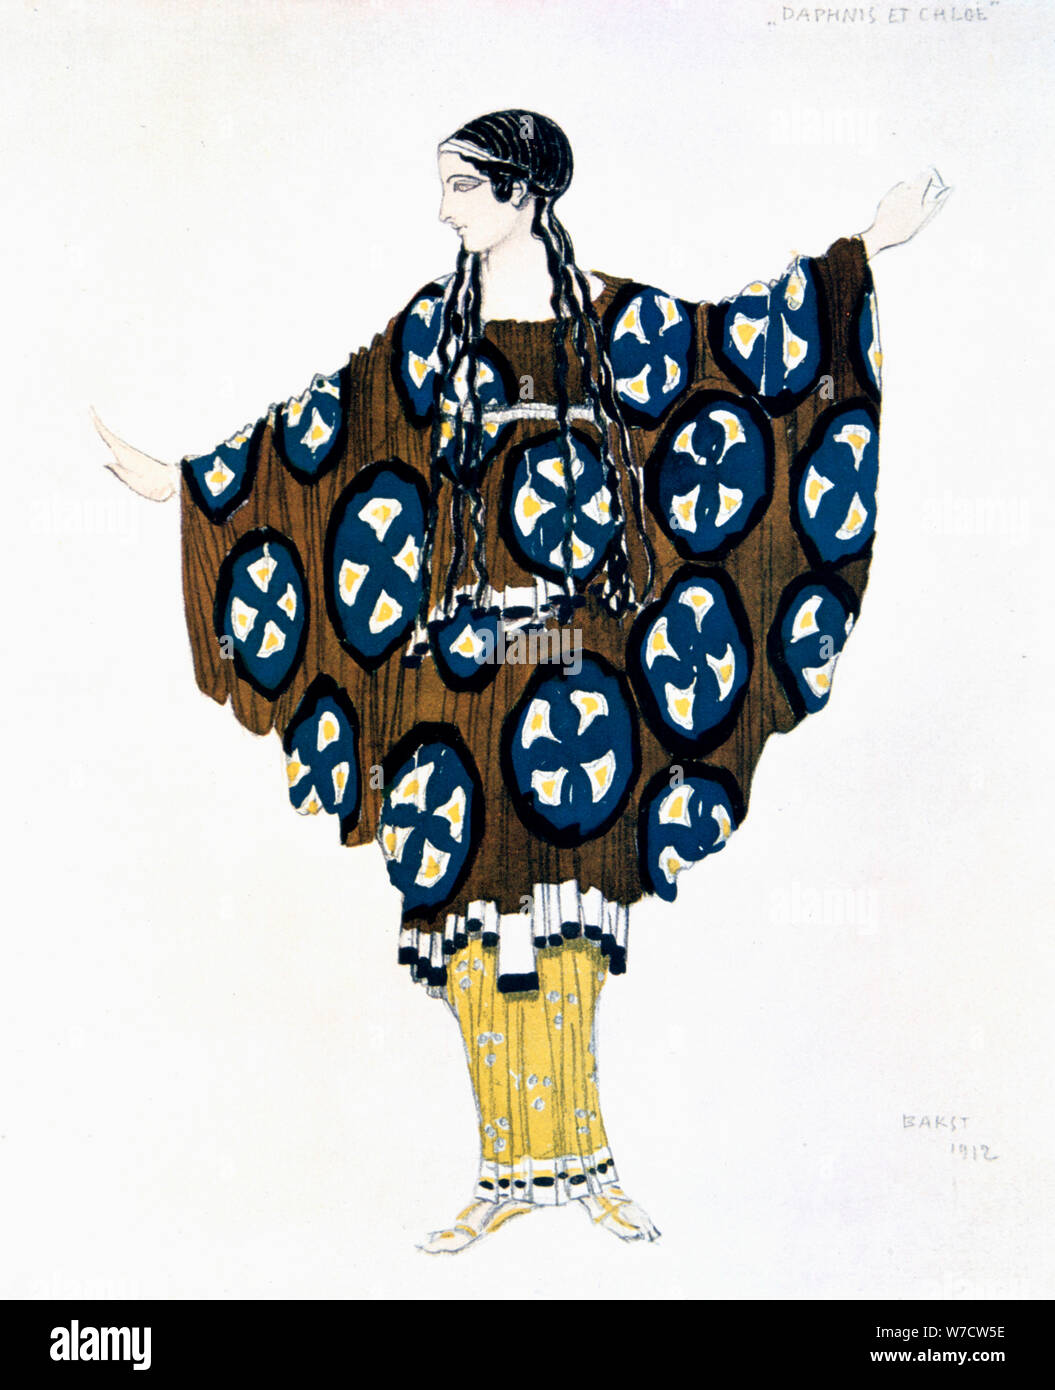 La conception de costumes pour les Ballets Russes une production de Daphnis et Chloé de Ravel, 1912. Artiste : Leon Bakst Banque D'Images